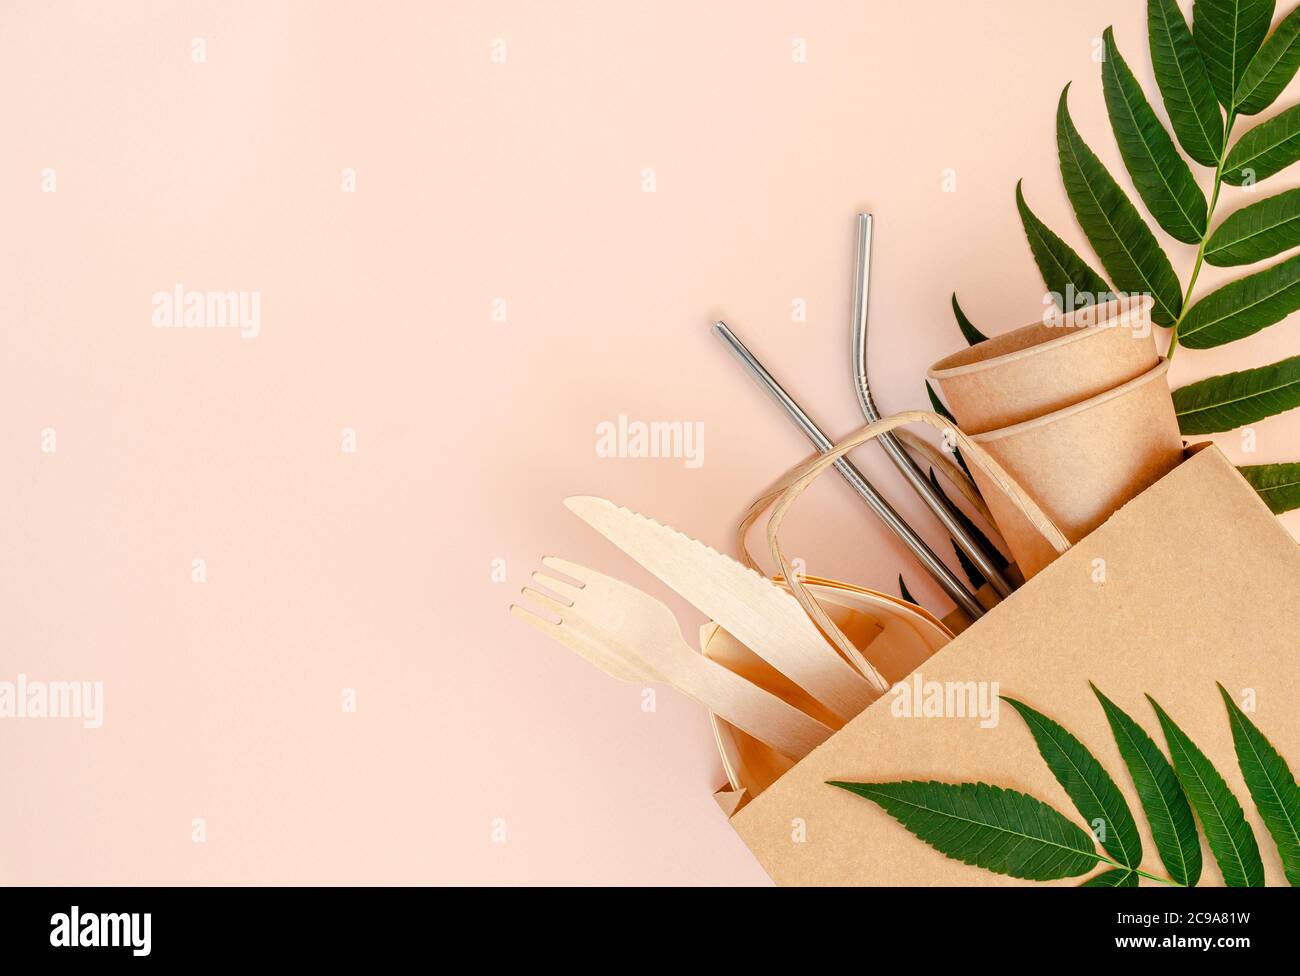 Plastikfreies Set mit Bambus, Papierbesteck und Trinkhalmen aus Metall auf rosa Hintergrund. Zero Waste Konzept. Draufsicht Stockfoto